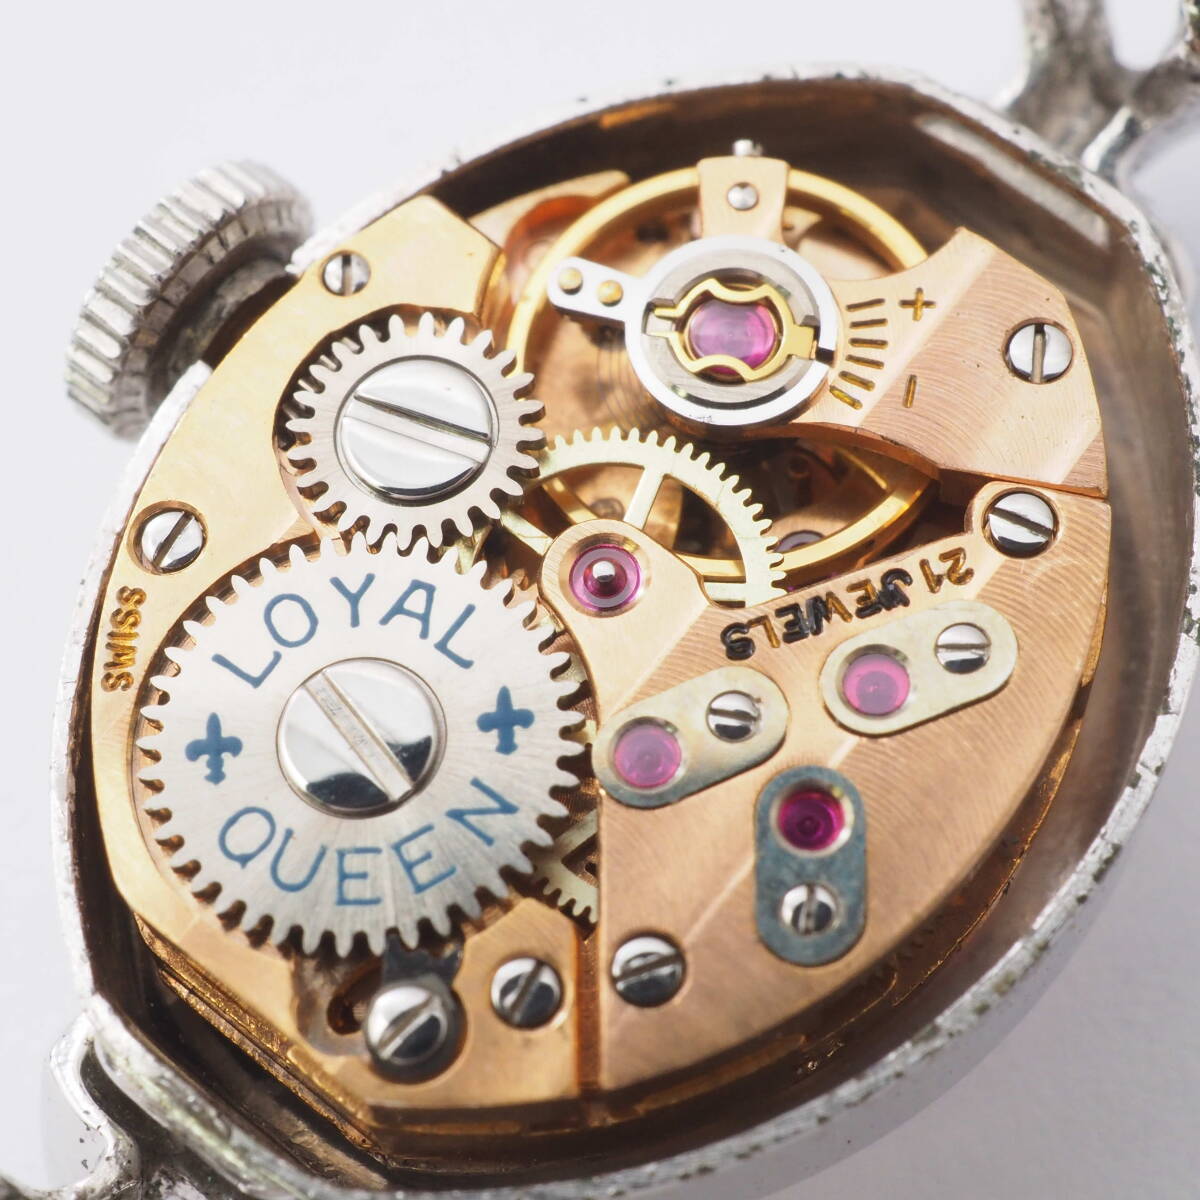  Royal Queen LOYAL QUEEN 21 камень механический завод серебряный женский женщина наручные часы лицо только [Pa1517-AN7